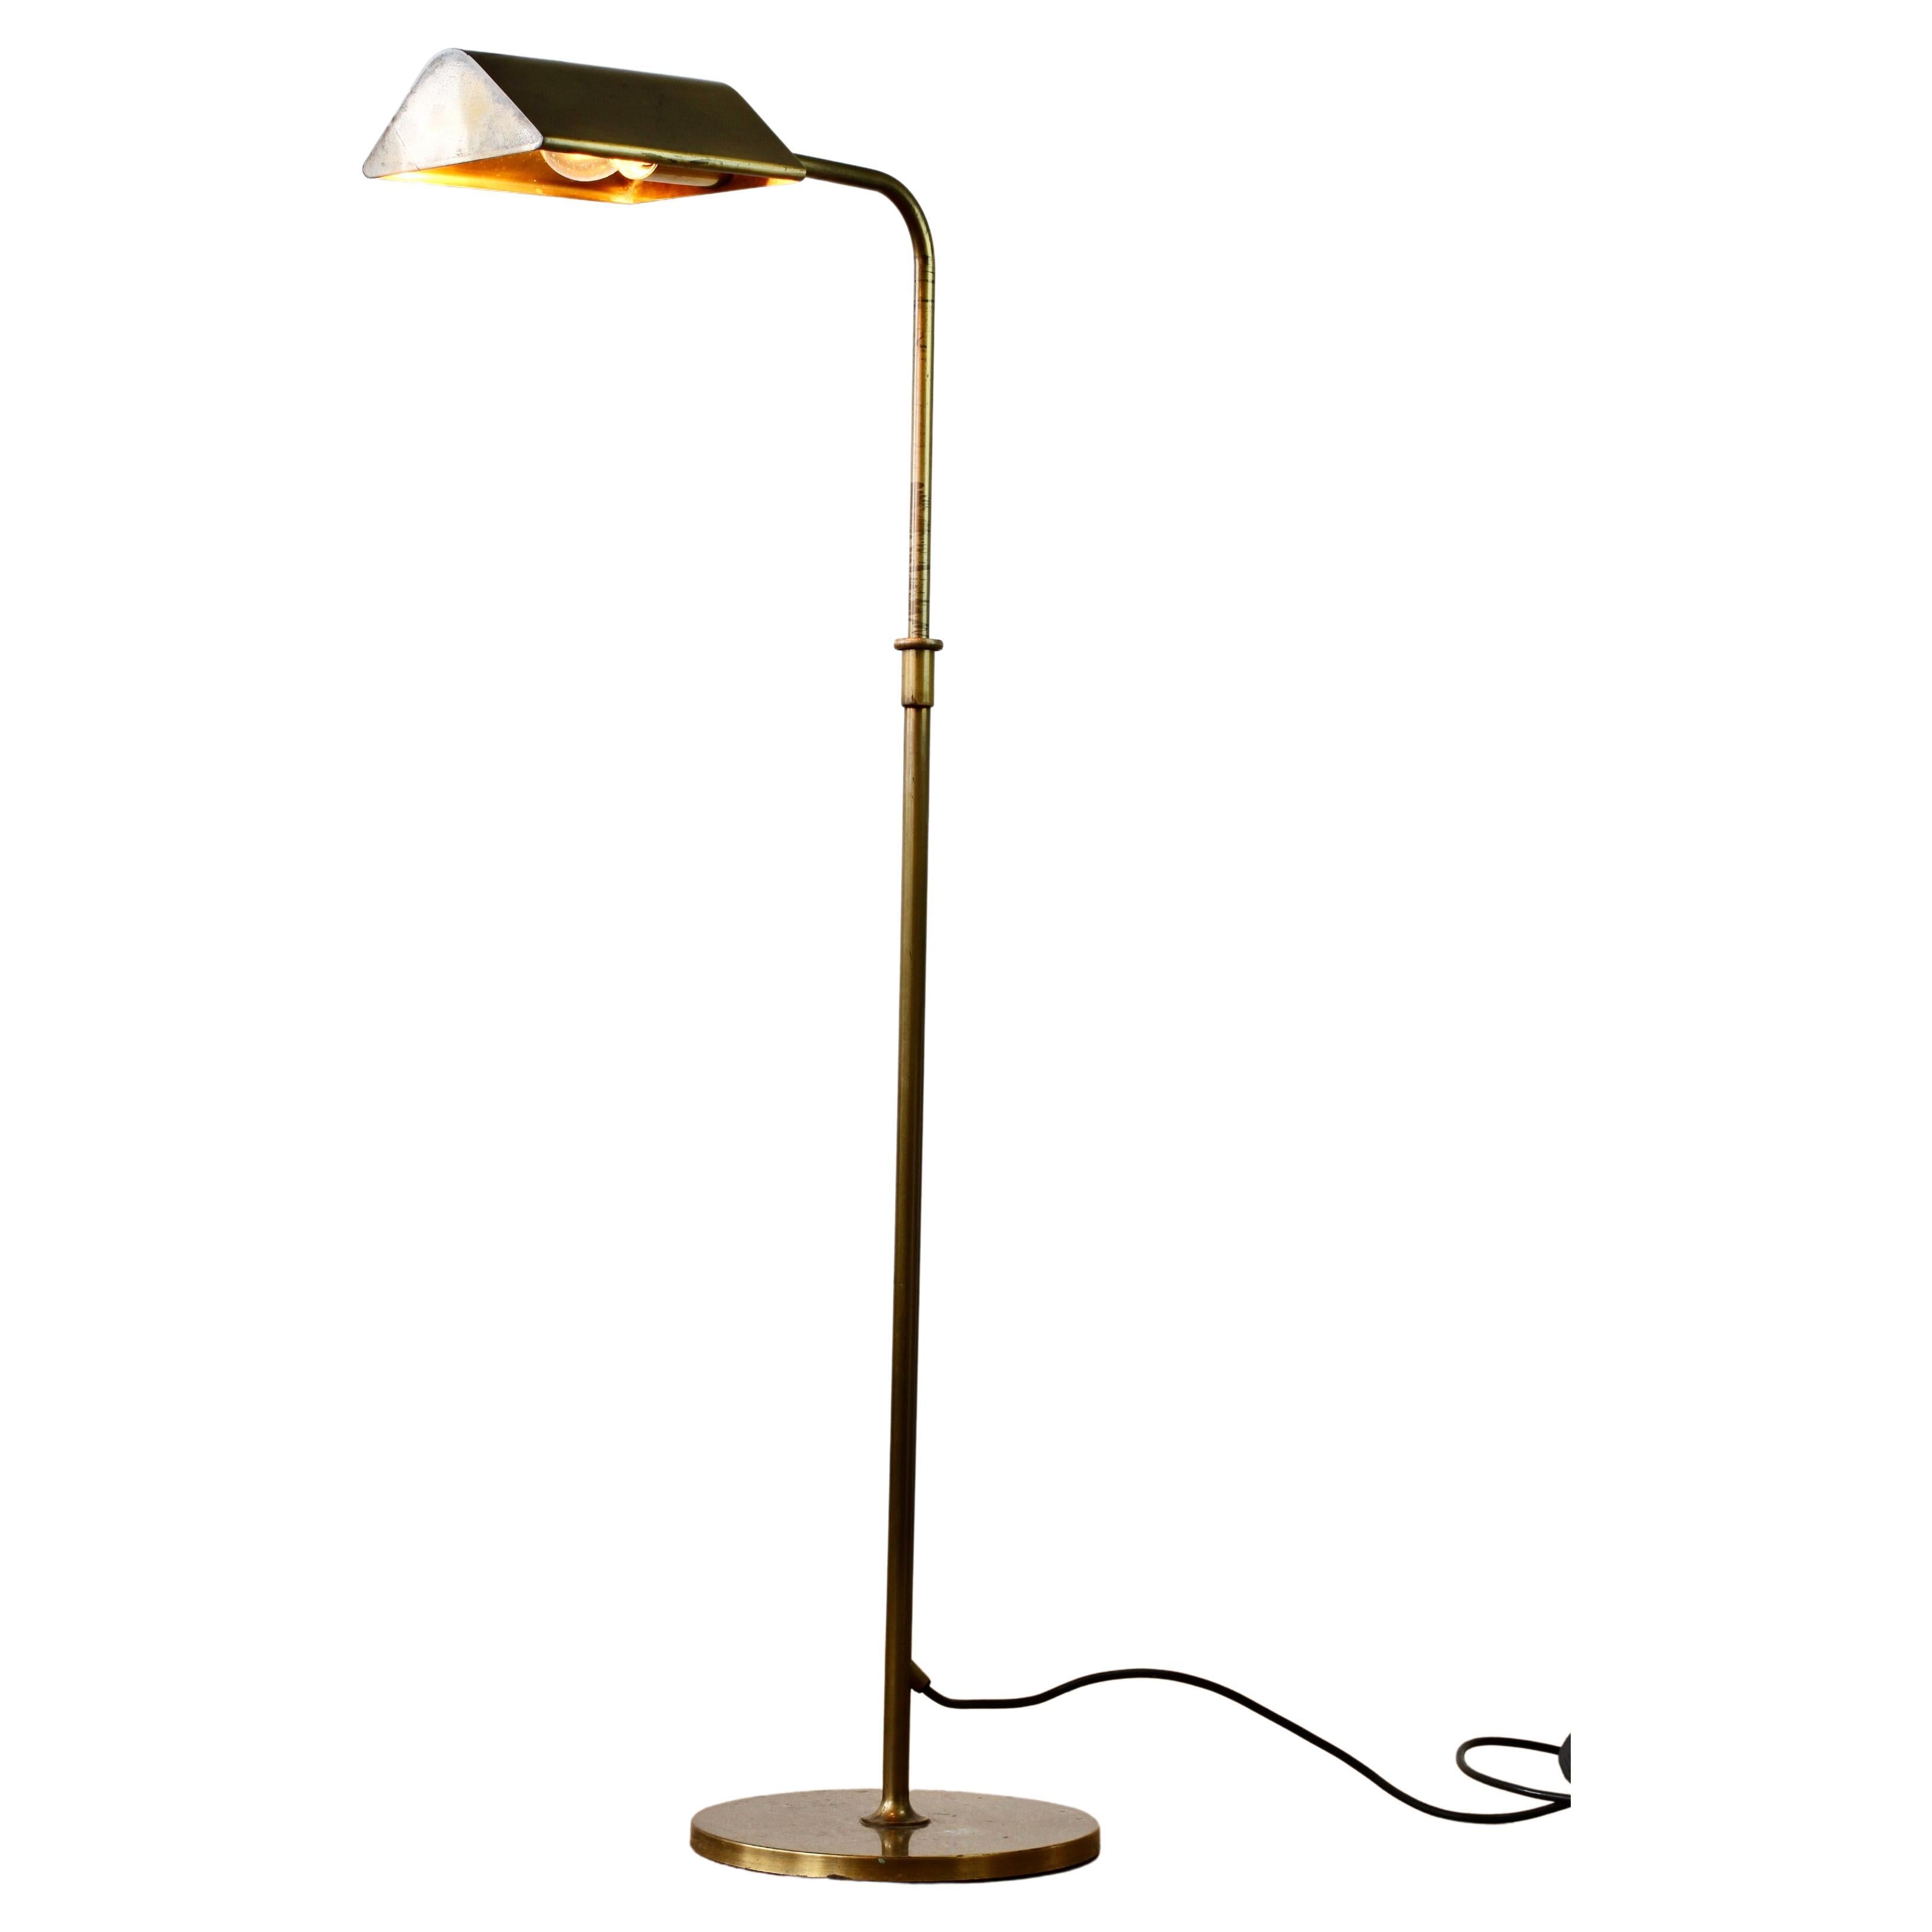 Florian Schulz Vintage Modernist Brushed Brass Adjustable Floor Lamp, circa 1985 For Sale